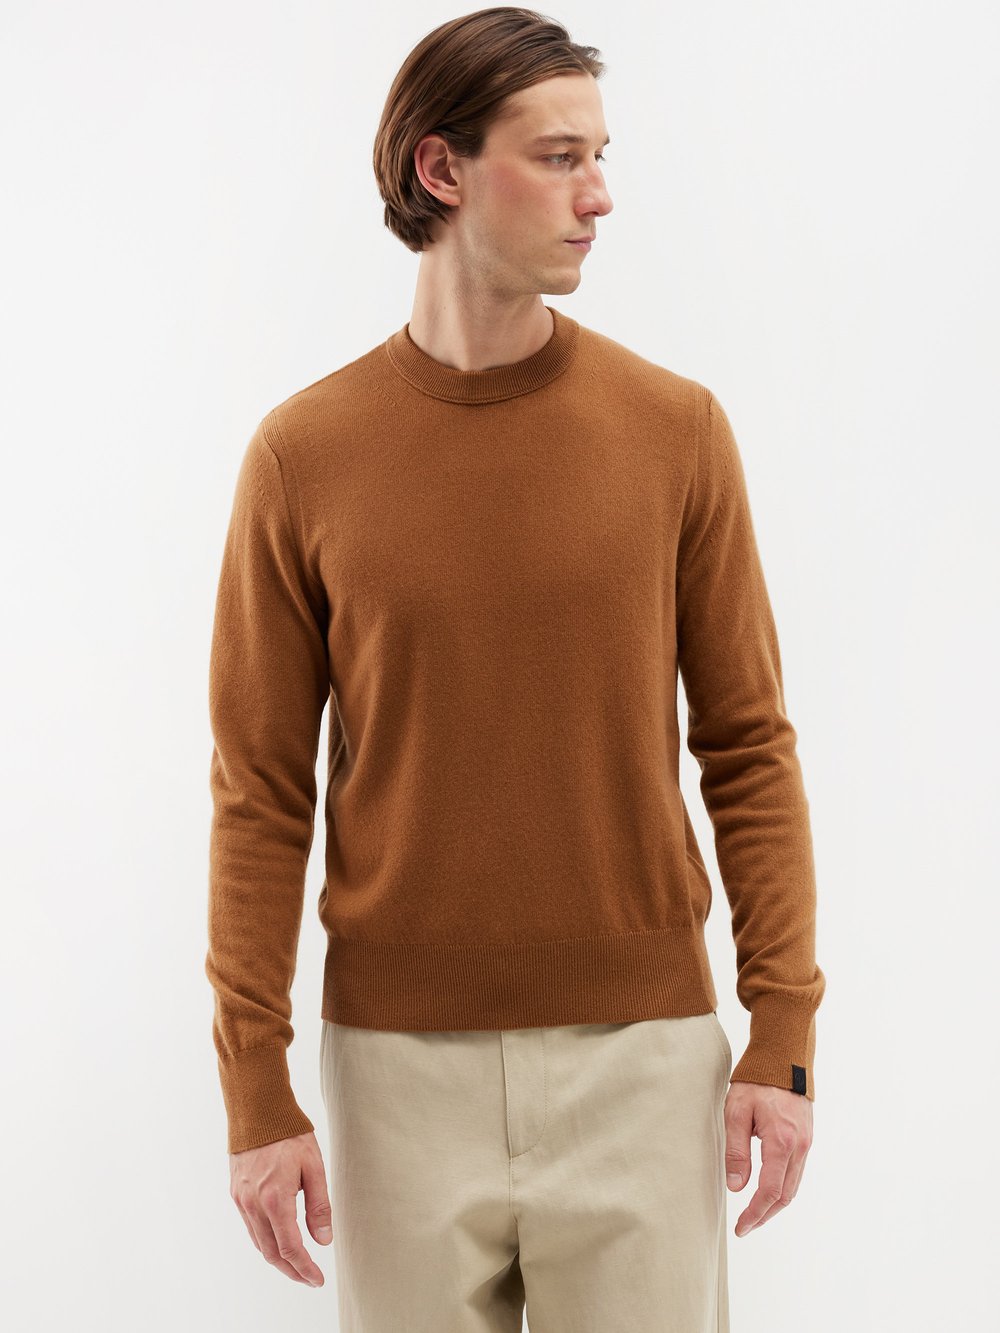 цена Кашемировый свитер harding Rag & Bone, коричневый